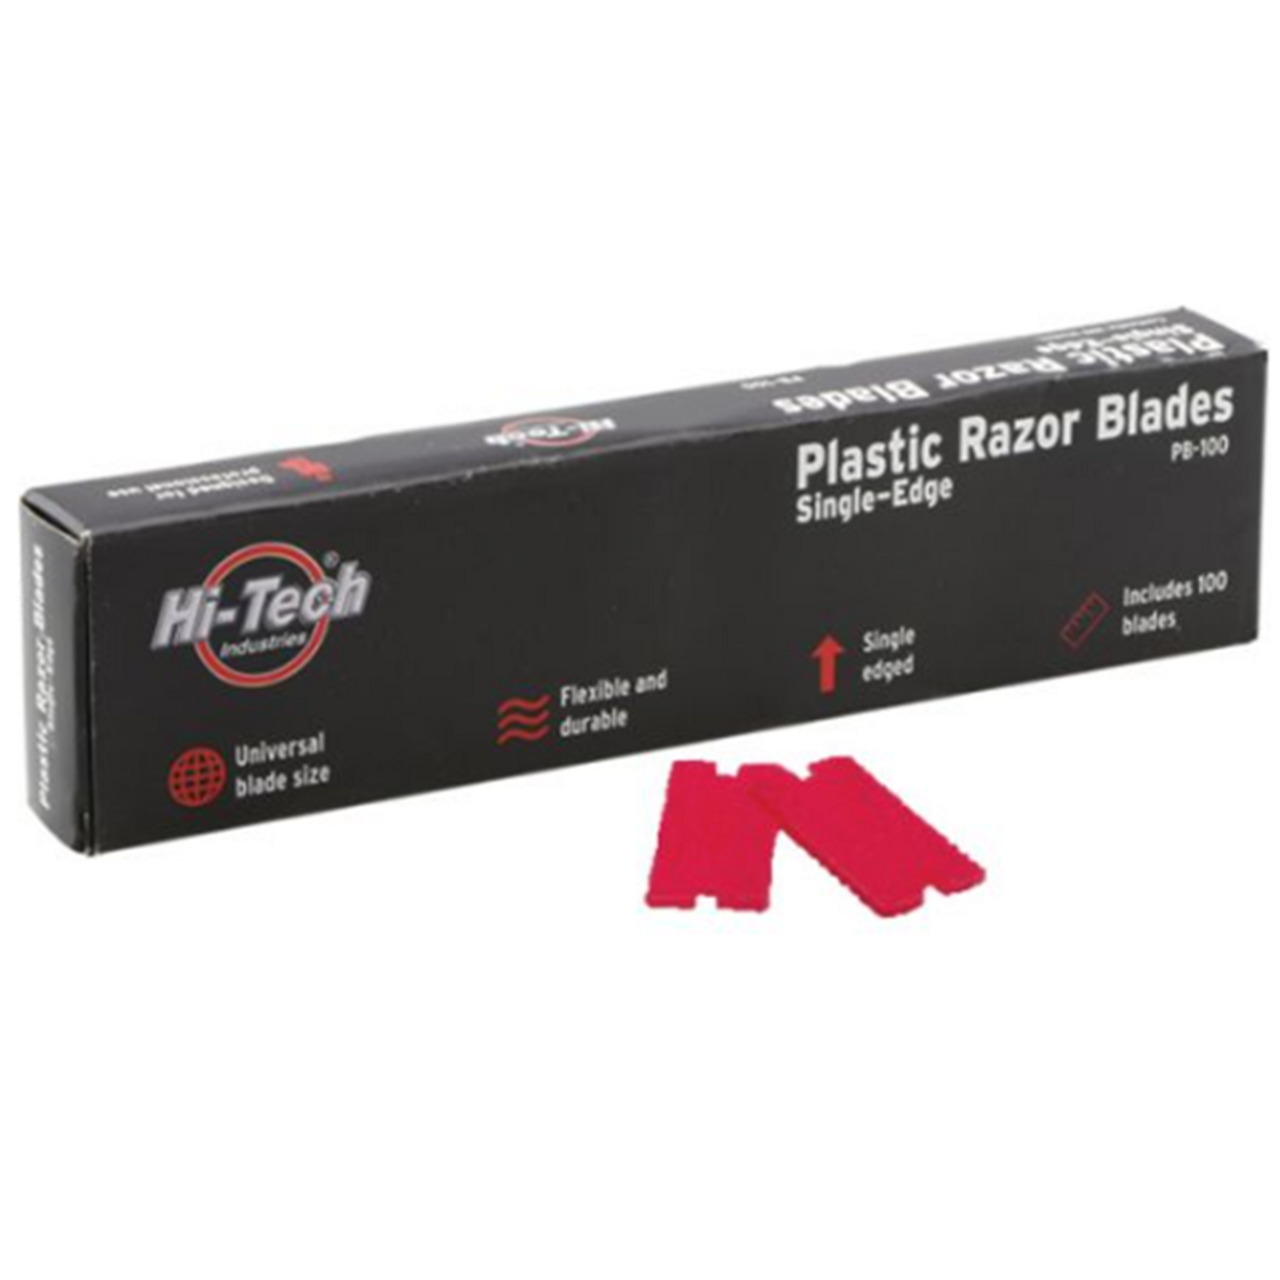 Plastic Razor Blades 100 Per Box